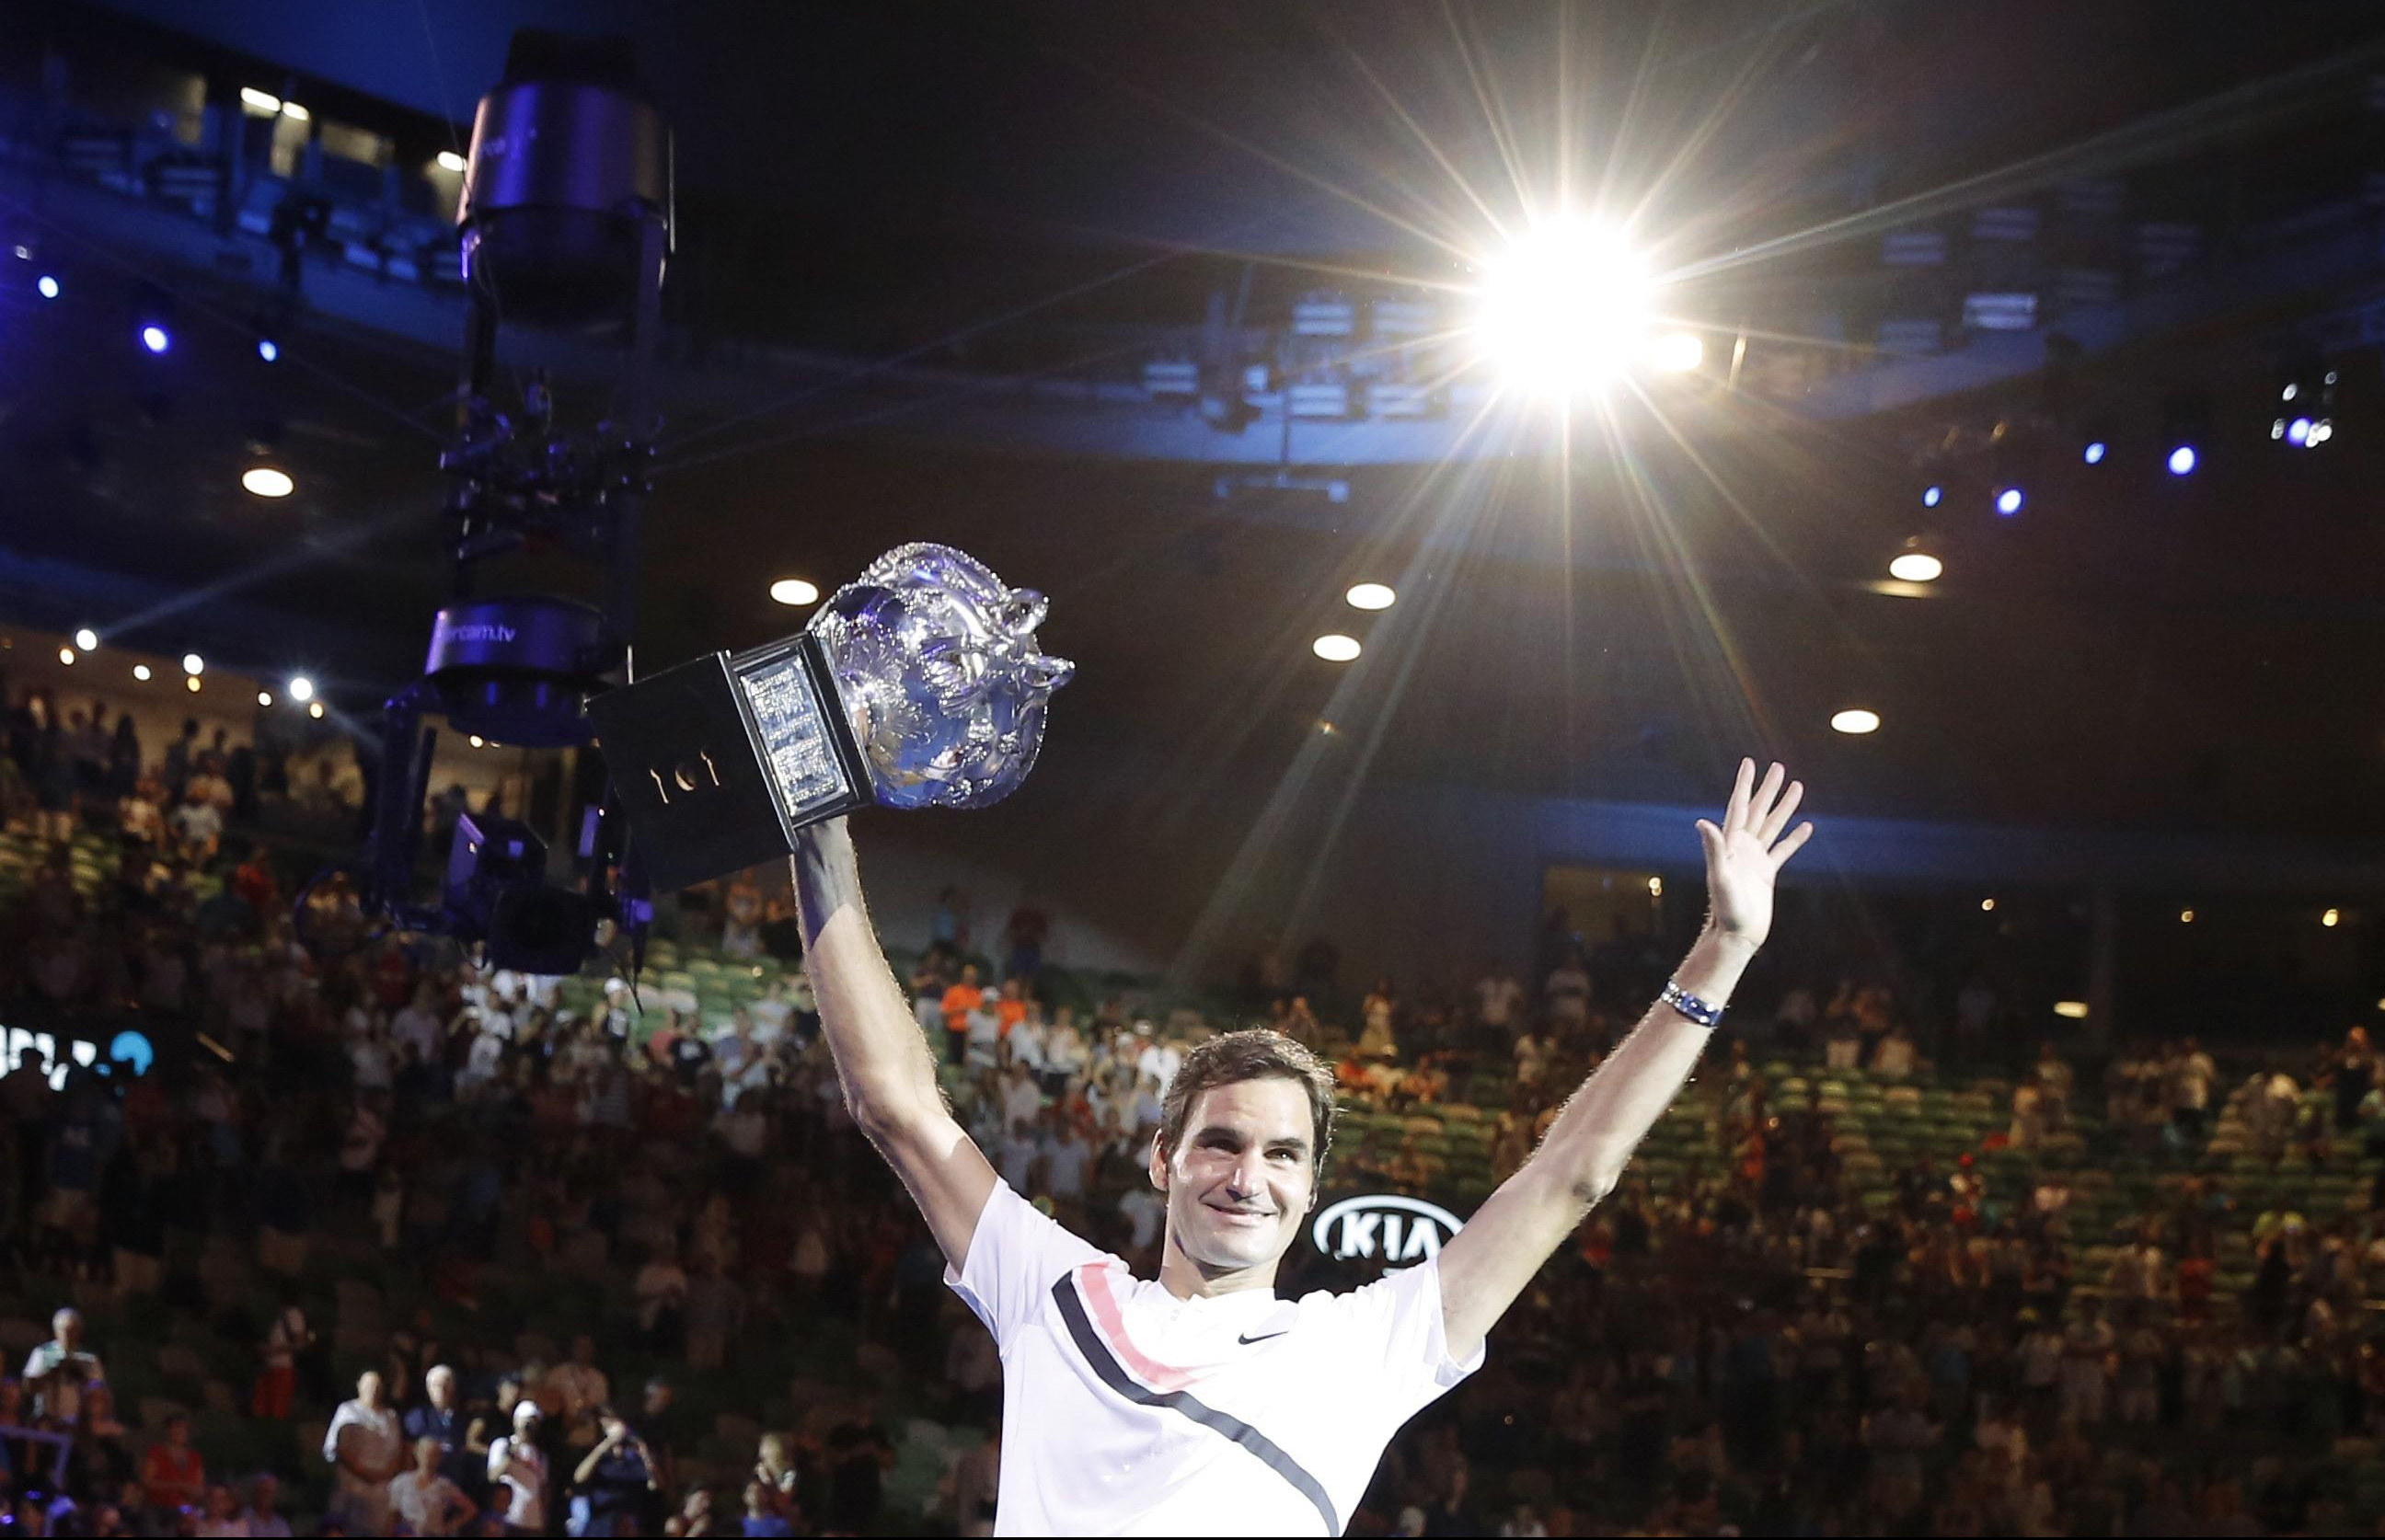 OTIŠAO U LEGENDU! Federerovi rekordi pamtiće se ZAUVEK, a to što je uradio za tenis PRIČAĆE GENERACIJE! (VIDEO)